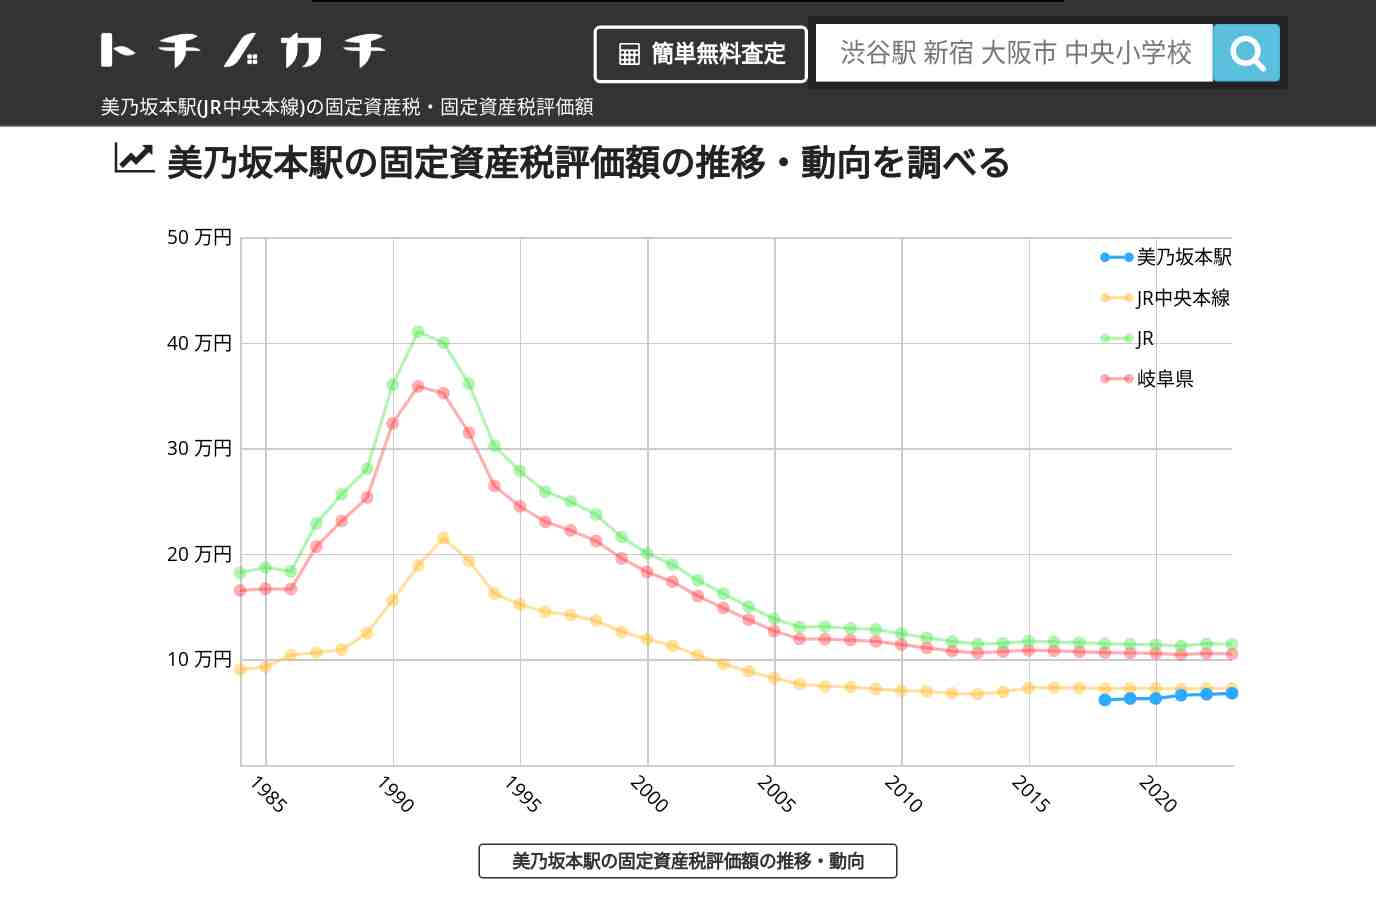 美乃坂本駅(JR中央本線)の固定資産税・固定資産税評価額 | トチノカチ